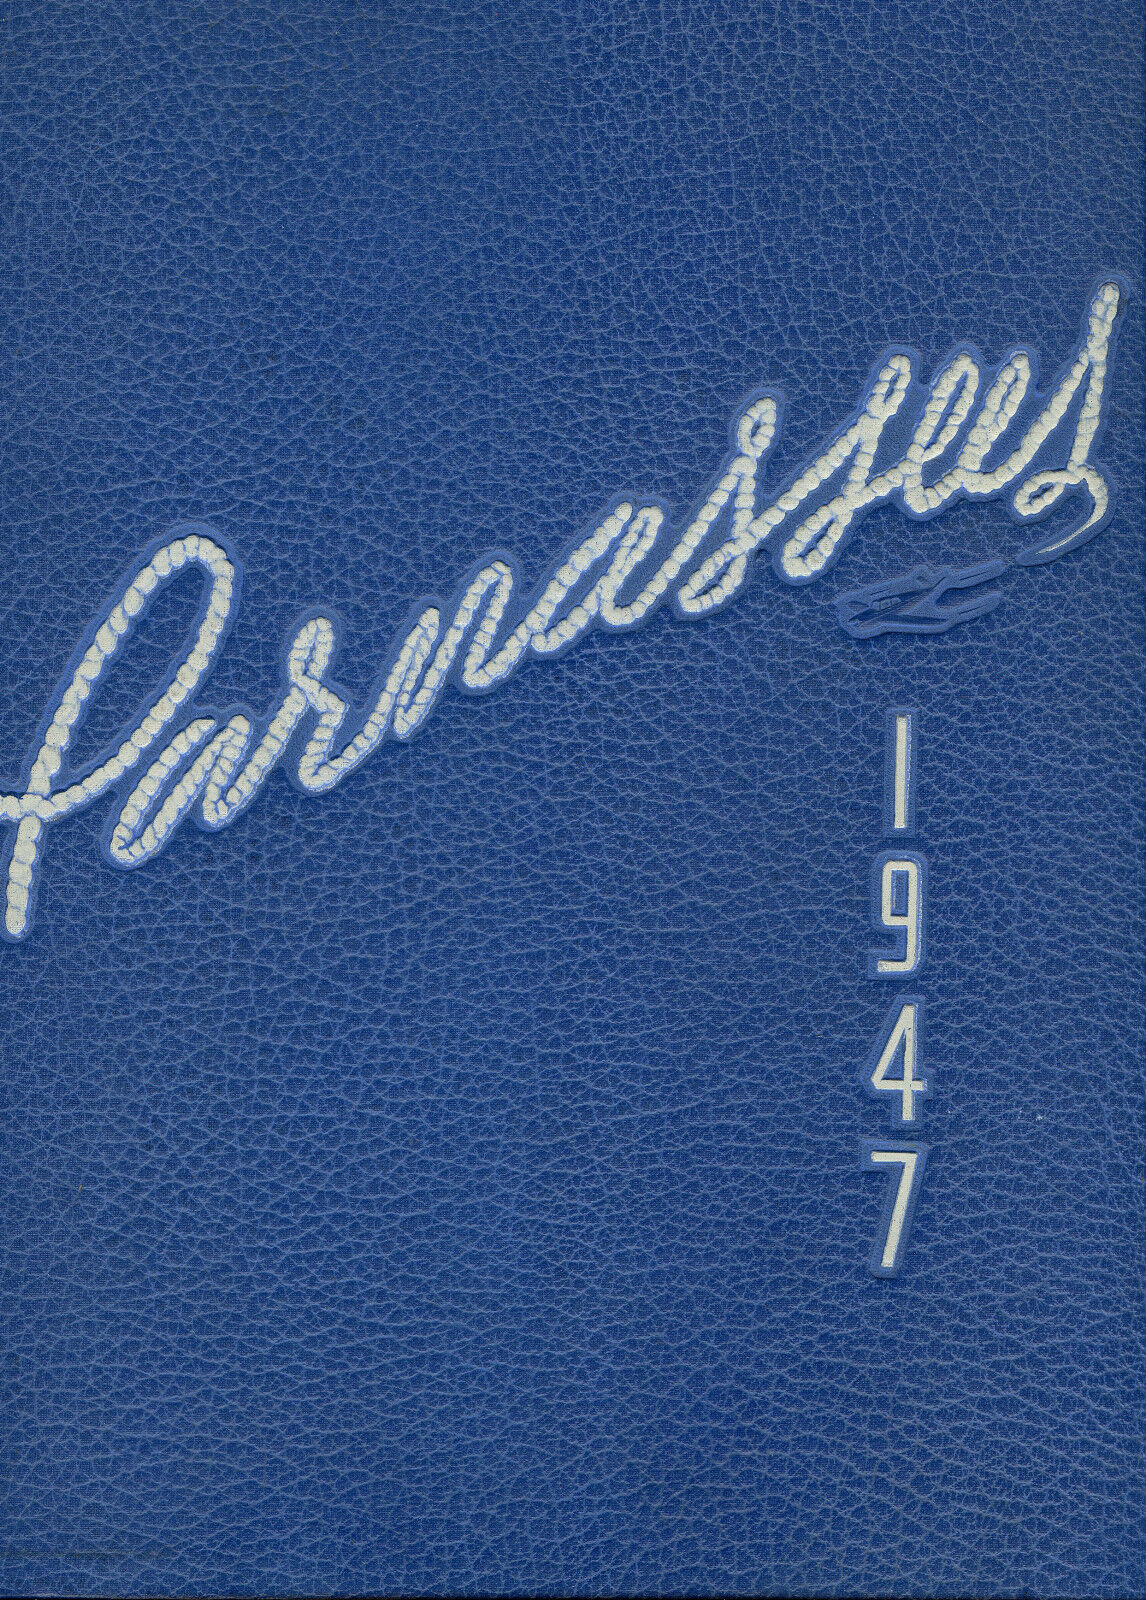 Original 1947 Yearbook - Municipal University of Wichita - Parnassus -Kansas 